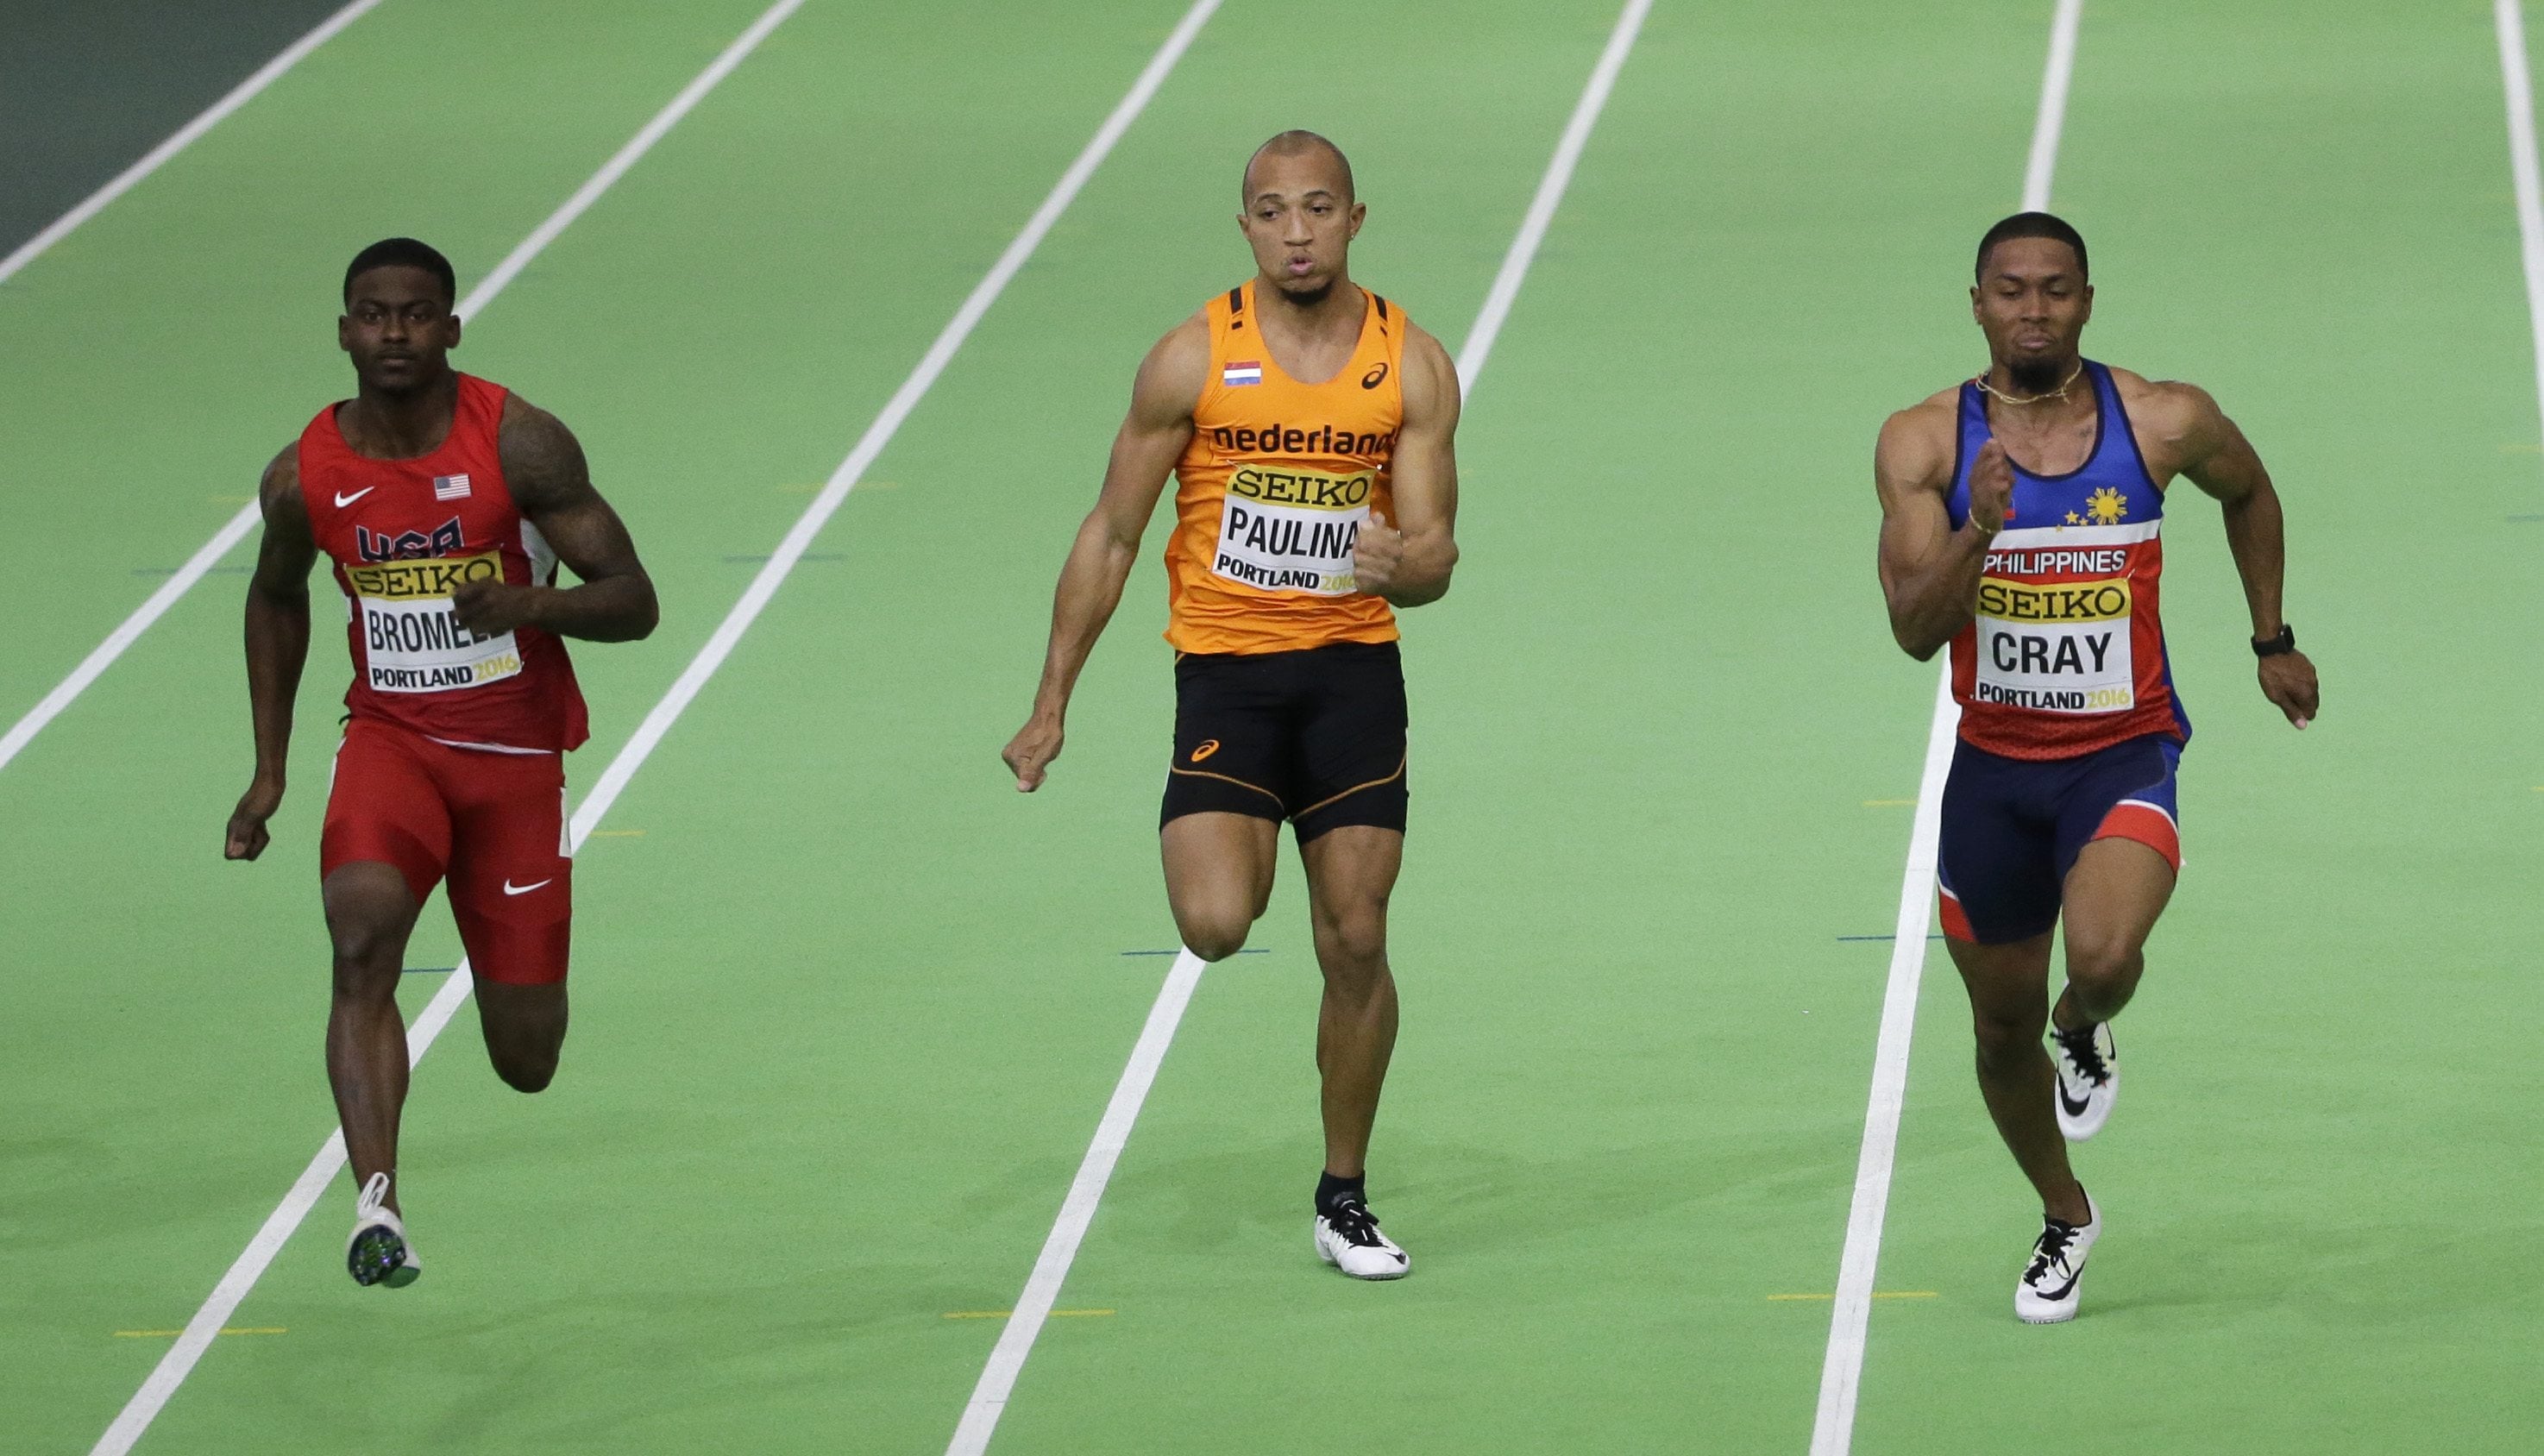 Onbelangrijk Aardbei Midden Bromell holds on to win 60-meter final at world indoors - The Columbian